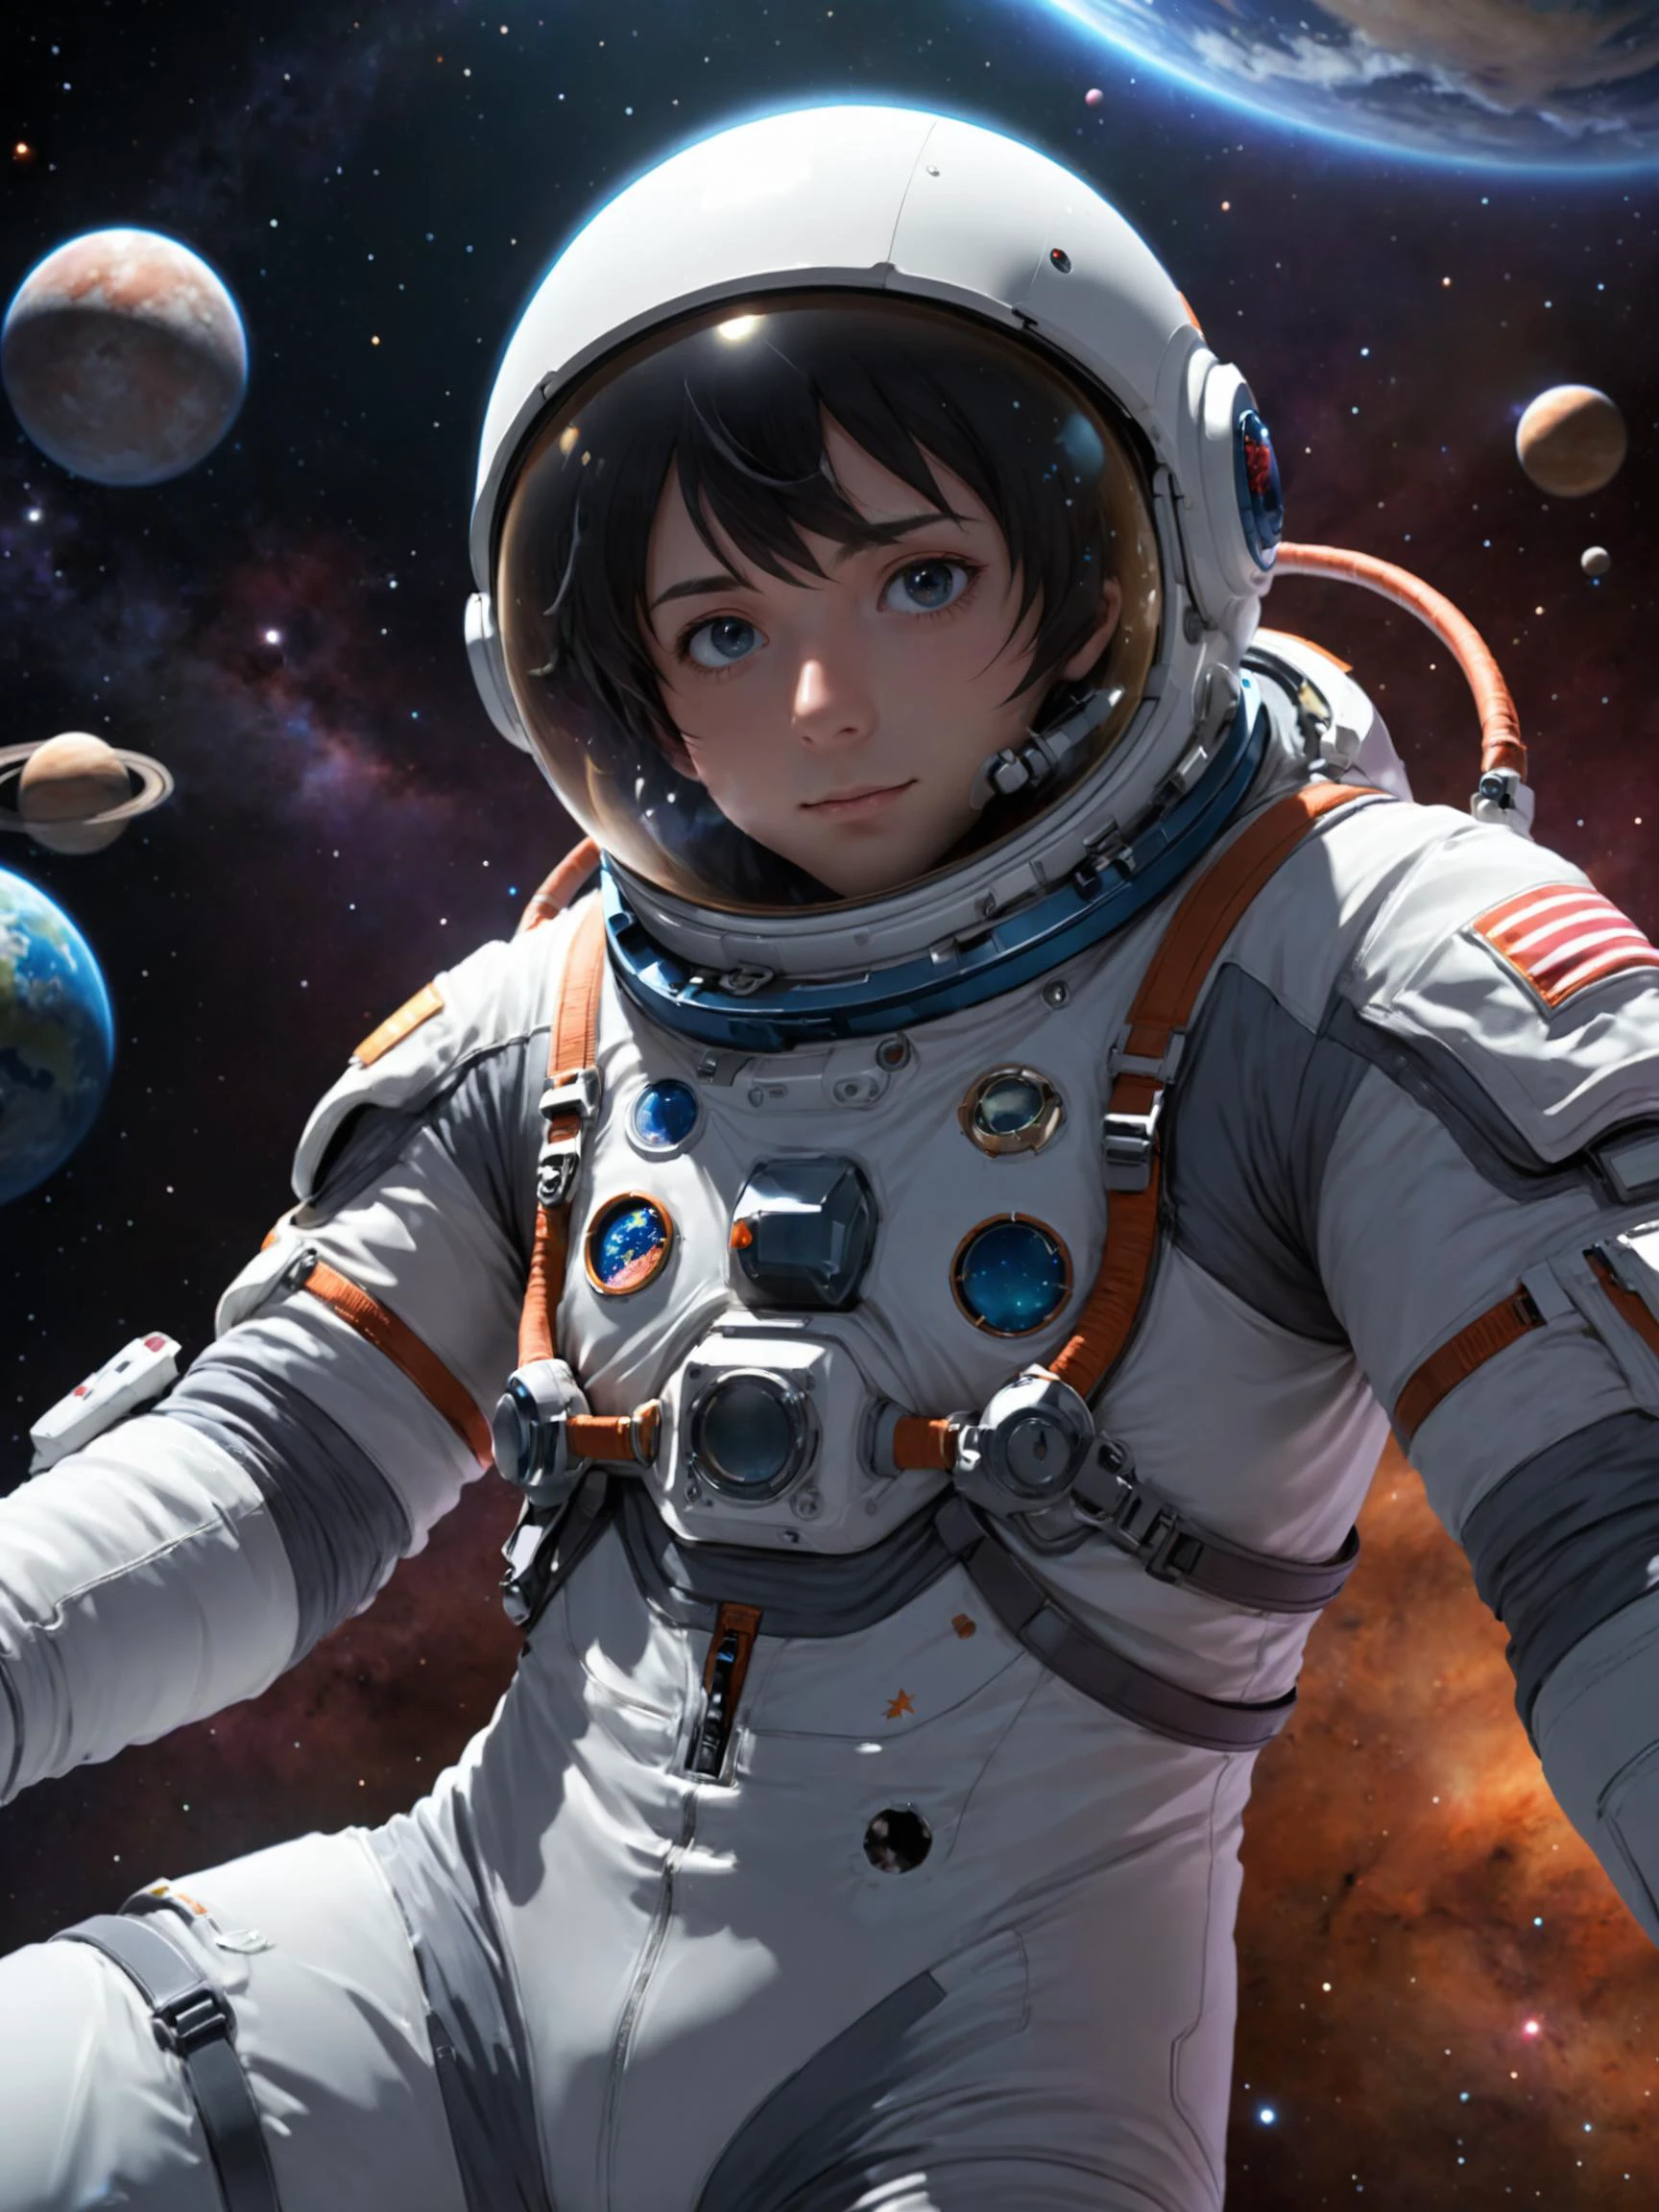 우주복을 입은 남자, 우주에 떠 있는, 얼굴 표시 3d 현대 애니메이션 스타일, 자세한 배경